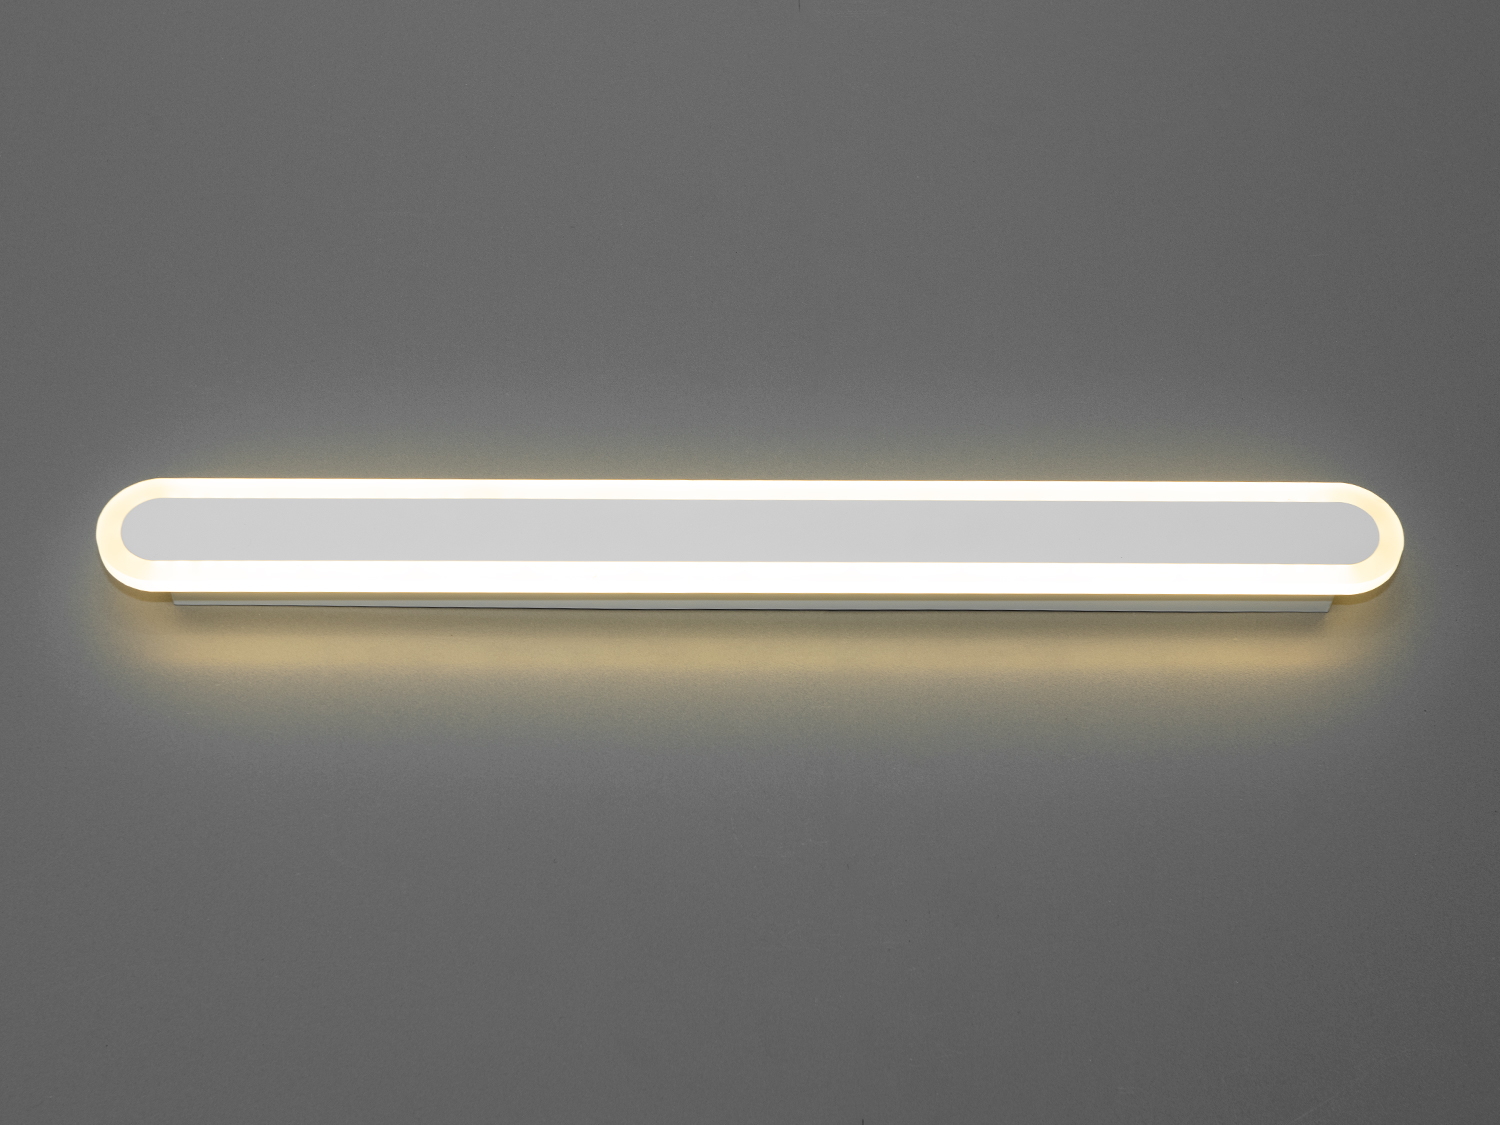 Світлодіодний світильник-планка на 30W відрізняється своєю унікальністю та сучасним дизайном. Він представляє собою елегантну і лаконічну лінію світла, яка ідеально підходить для створення чистого освітлення в будь-якому просторі, будь то спальня або кабінет. Його чисті, прямі лінії і мінімалістична естетика роблять його вишуканим доповненням до сучасного інтер'єру.
Світильник-бра складається з довгої світлодіодної панелі, обрамленої тонкою акриловою обідкою, що надає йому витонченого зовнішнього вигляду. Металева основа світильника має ненав'язливий білий матовий колір, що контрастує з яскравістю світлодіодів, створюючи візуальний інтерес і глибину. Відсутність видимих кріплень і кабелів посилює враження легкості та плавності дизайну.
Це  зовсім нове і незвичайне виконання плафонів із акрилу, що обрамляють LED стрічку. Таке бра запросто підійде під будь-який інтер'єр - класичний, сучасний і навіть в стилі «хай-тек». 
Ці світильники є ідеальним рішенням для акцентного (елементного) підсвічування в інтер'єрі - підсвічування дзеркал, картин, стінних ніш, особливих деталей інтер'єру. 
У даній серії всі світильники оснащені унікальними енергозберігаючими світлодіодними стрічками. Які за дуже низької споживаної потужності створюють потужний світловий потік. 
Витончені накладні світлодіодні світильники призначені для створення яскравого світлодіодного освітлення з регульованою температурою кольору від теплого білого до холодного білого. 
Перемикання спектрів світіння світлодіодним панелі здійснюється простим вимиканням-включенням.
Світлодіодний світильник дозволяє вибирати режими освітлення в залежності від часу доби.
Вони створені щоб бути окрасою інтер'єру, а не просто утилітарним світильником як звичайне лінійне підсвічування.
Кріпиться до будь-яких видів поверхонь універсальним кріпленням-на планку.